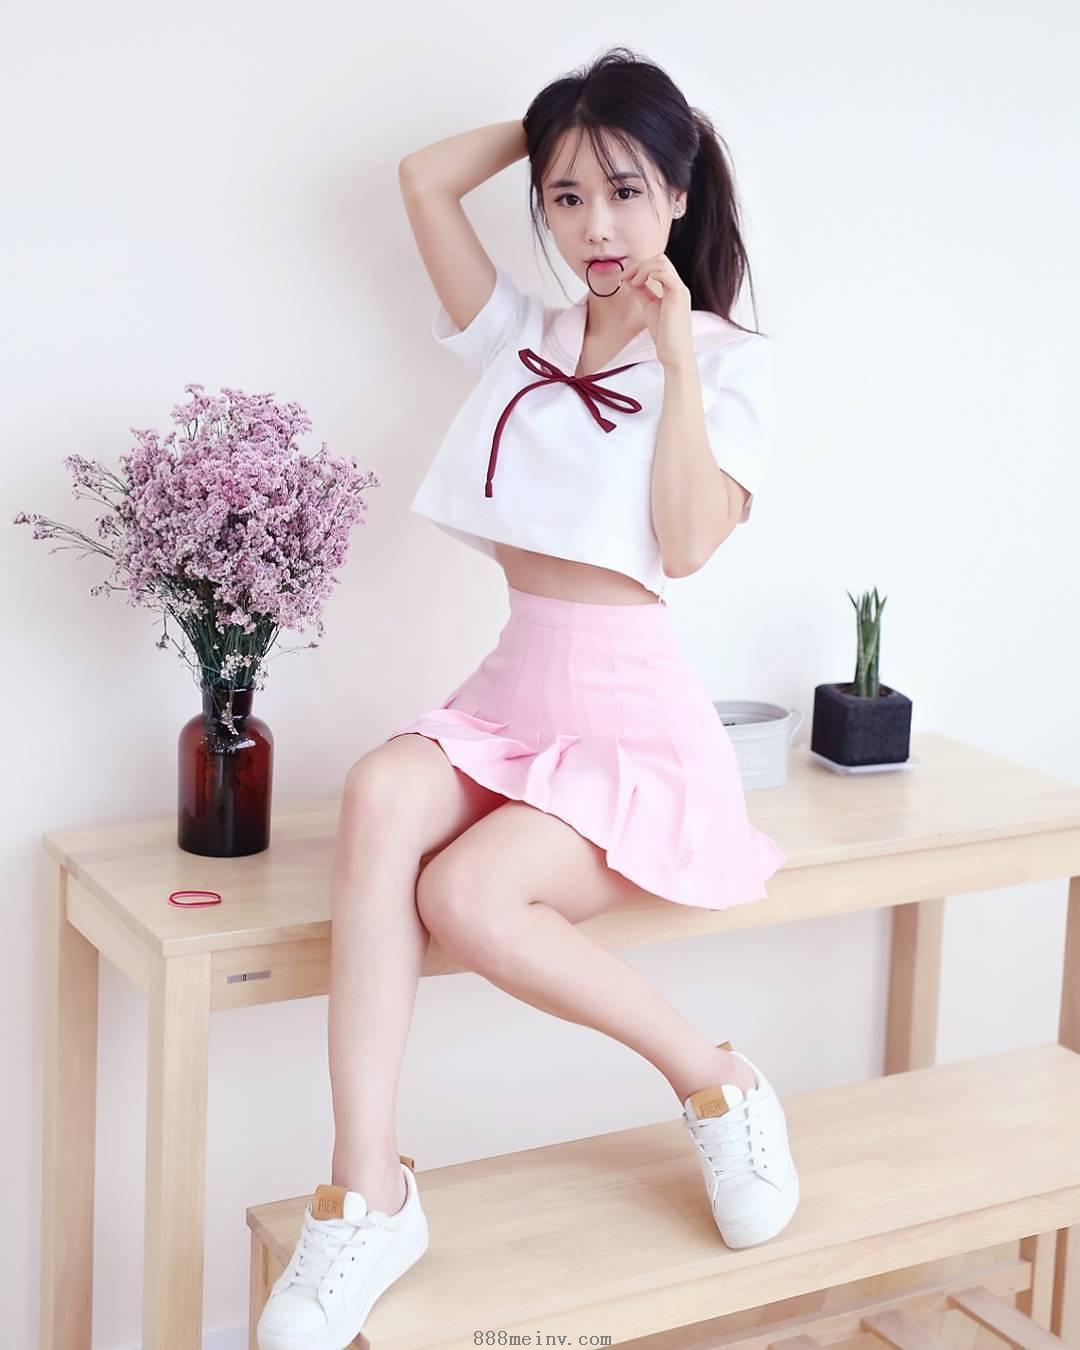 韩国外拍模特캔디 蜂腰翘臀极品身材888美女图